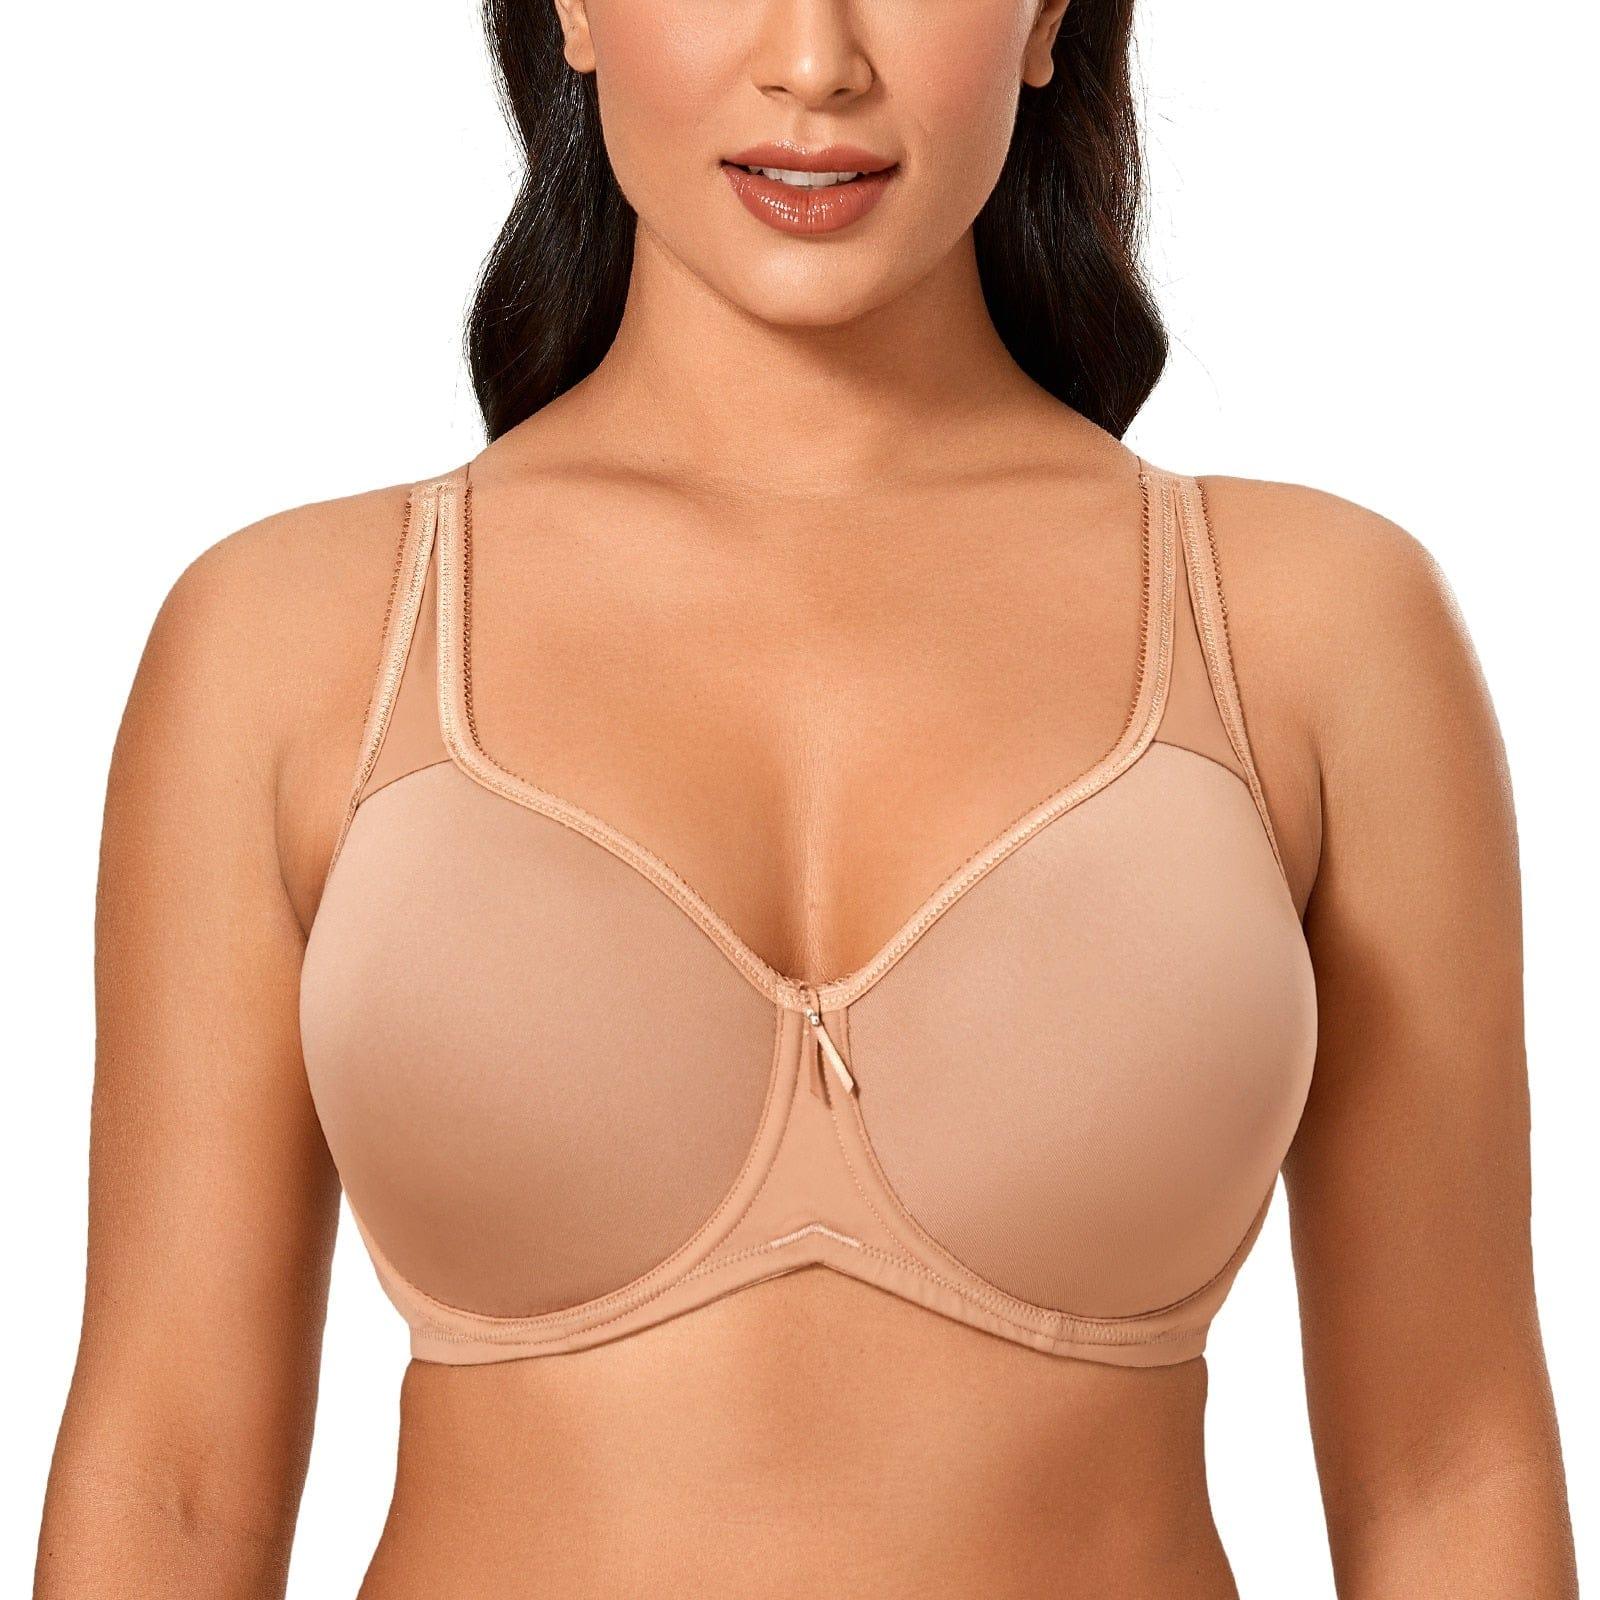 Gloria bra (Plus sizes) - VERSO QUALITY MATERIALS